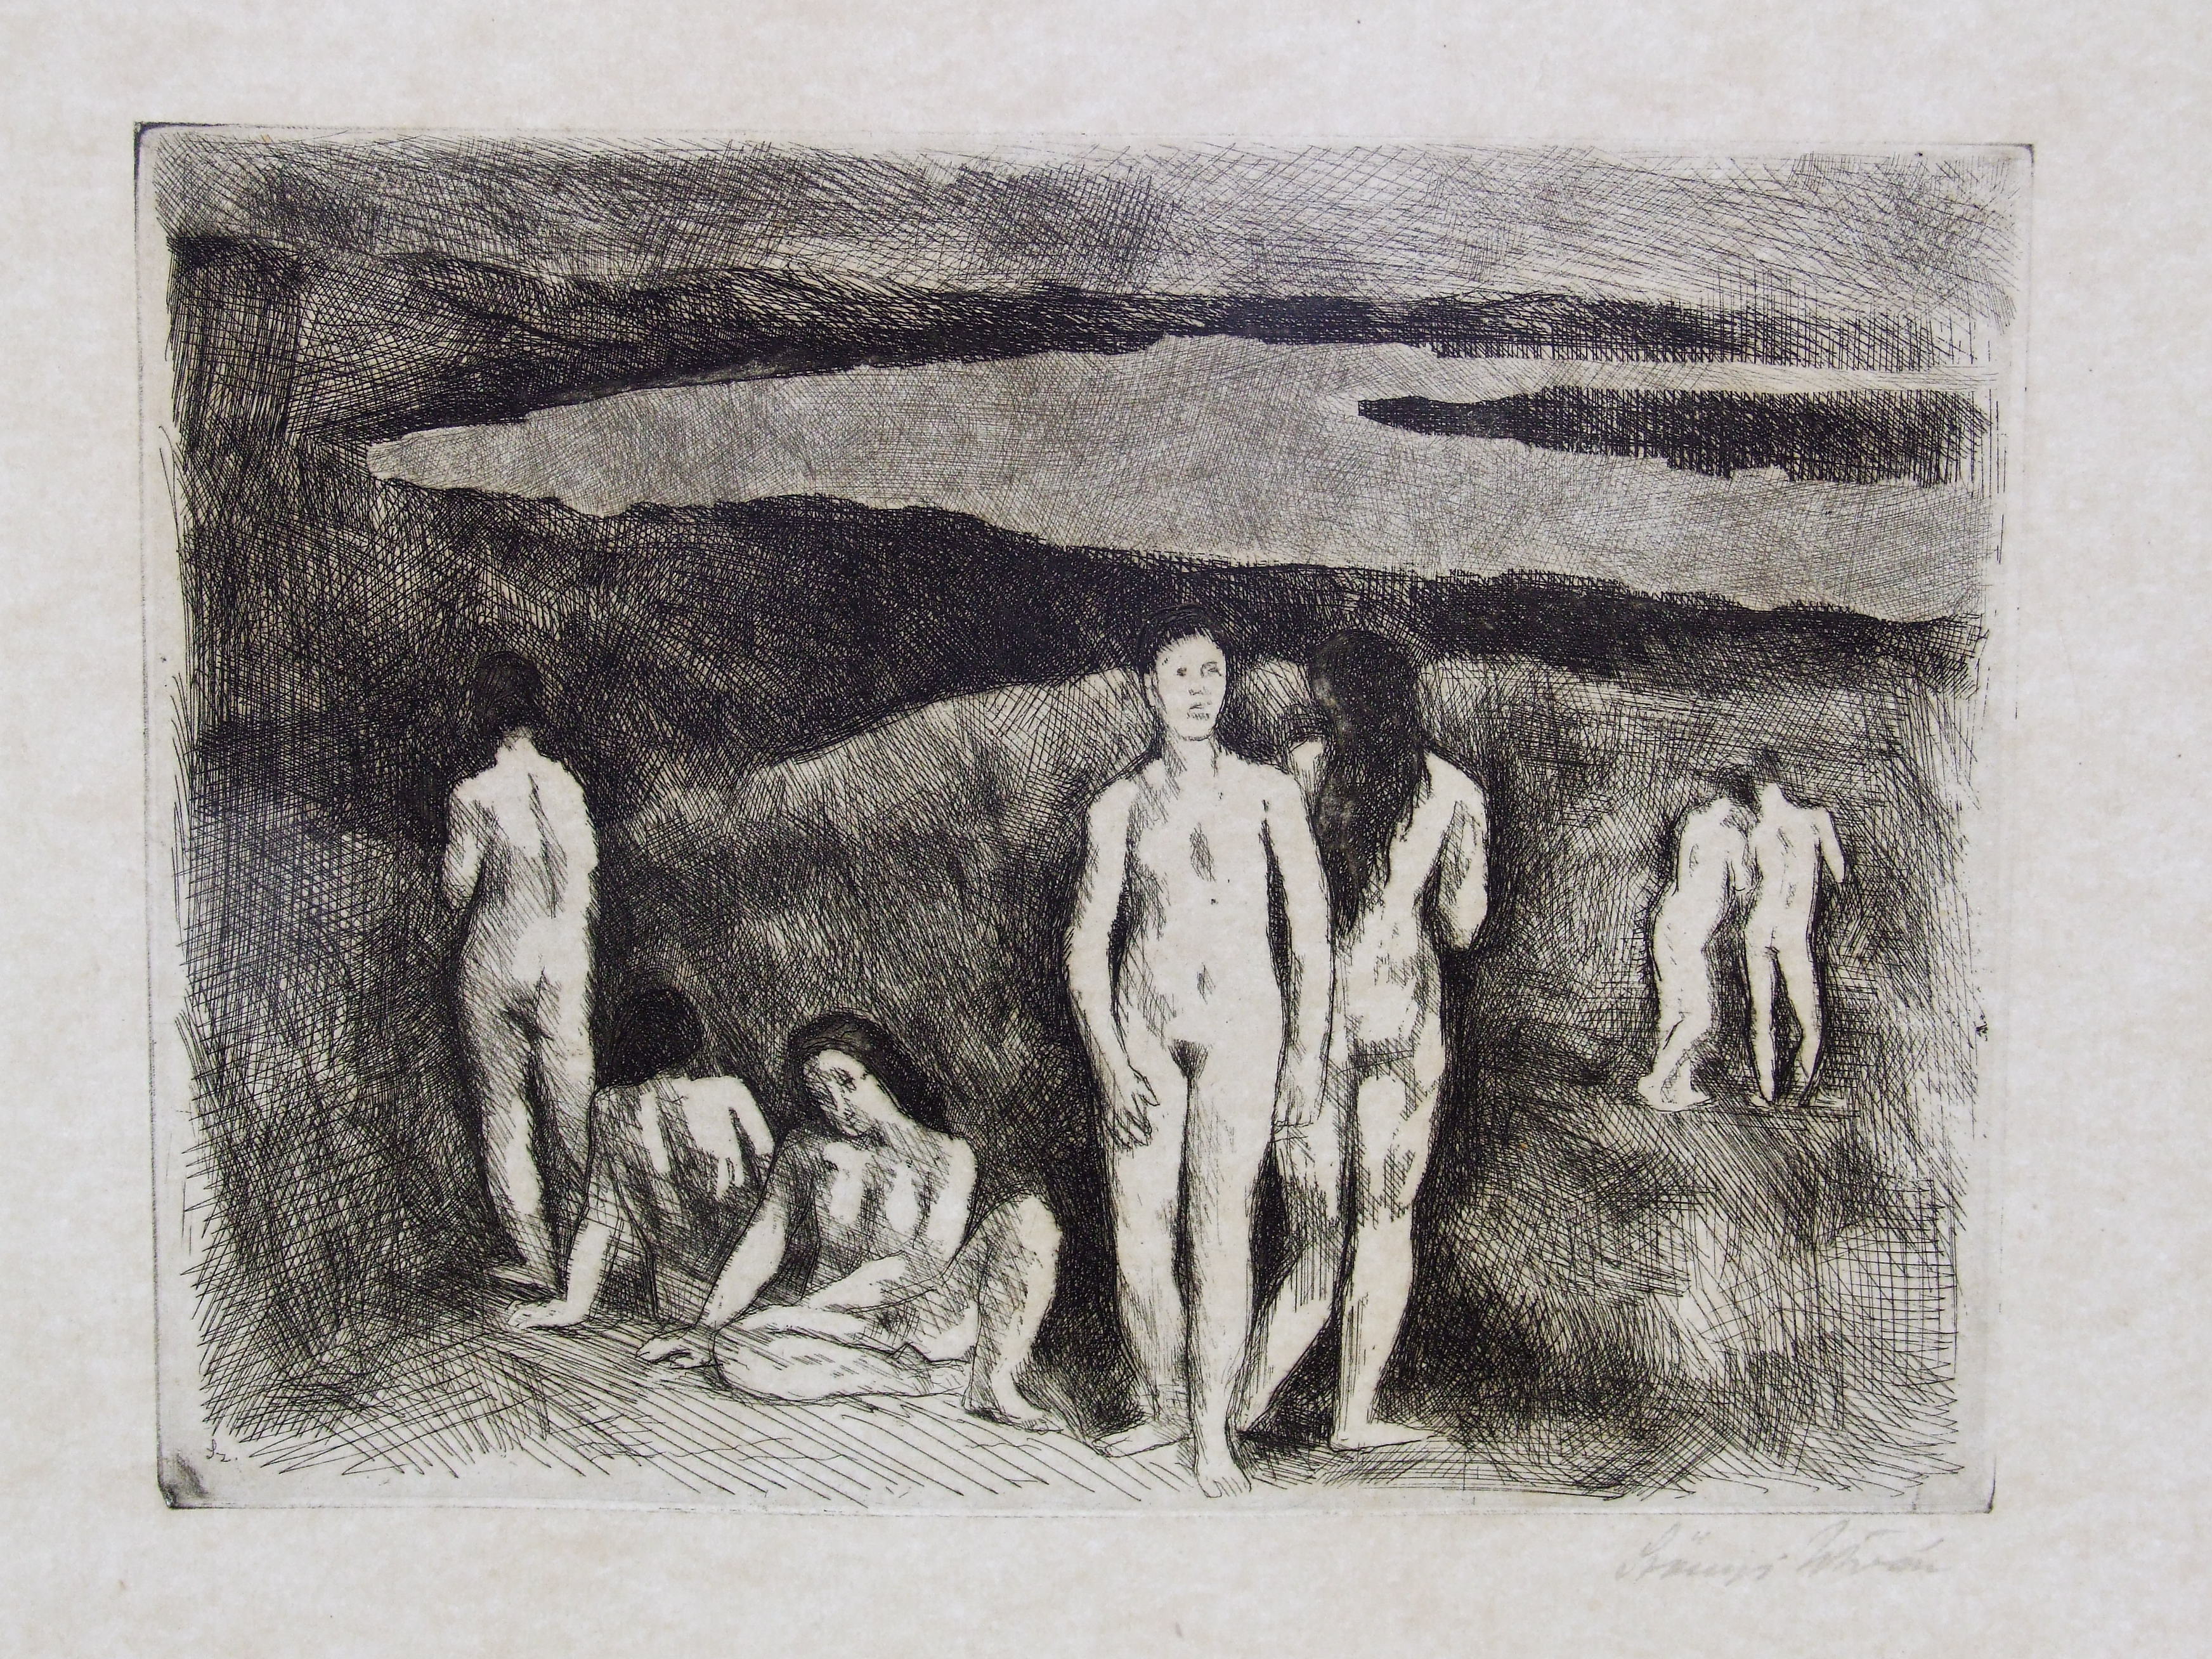 Szőnyi, István: Nudes on the riverside